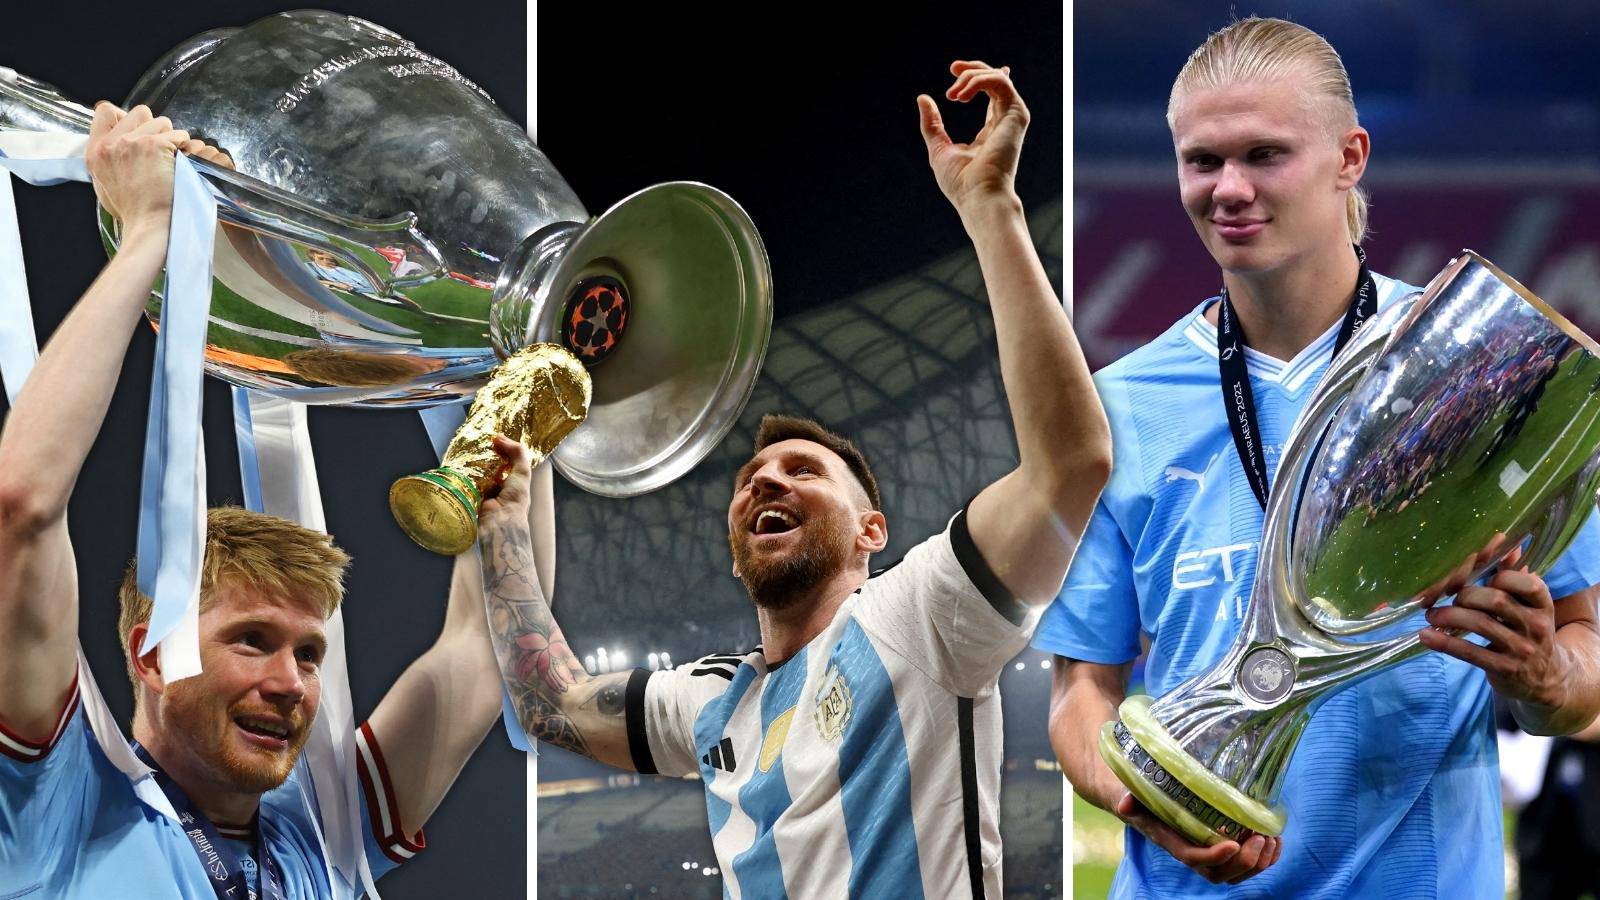 Uefa i 24sata biraju najboljeg nogometaša Europe, večeras je proglašenje. Tko će uzeti trofej?